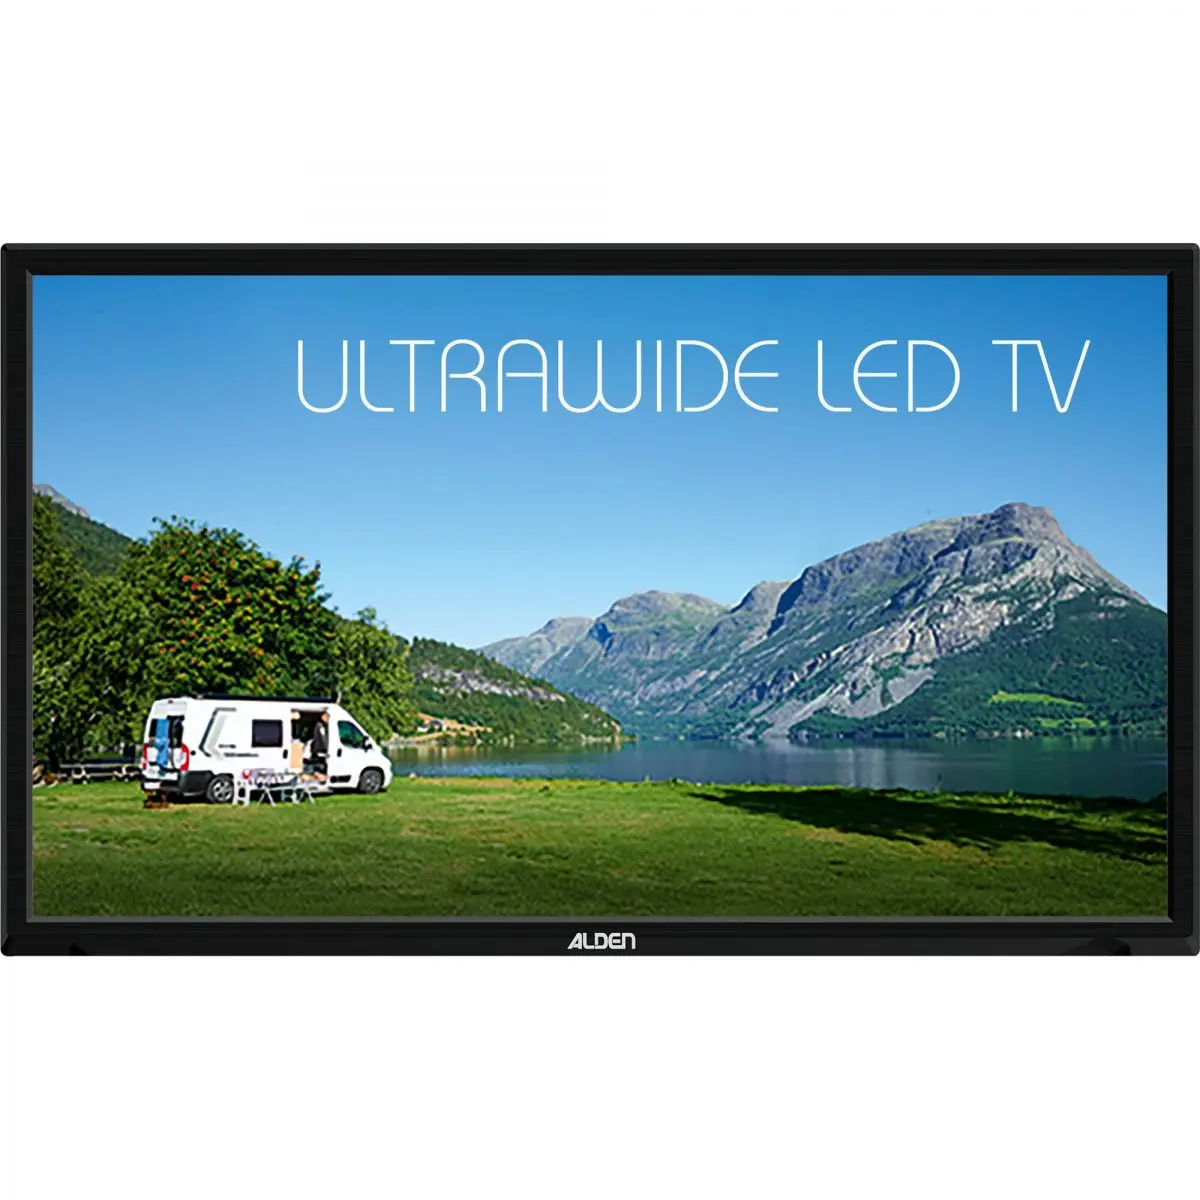 Televízor Alden Ultrawide 24", 12 V